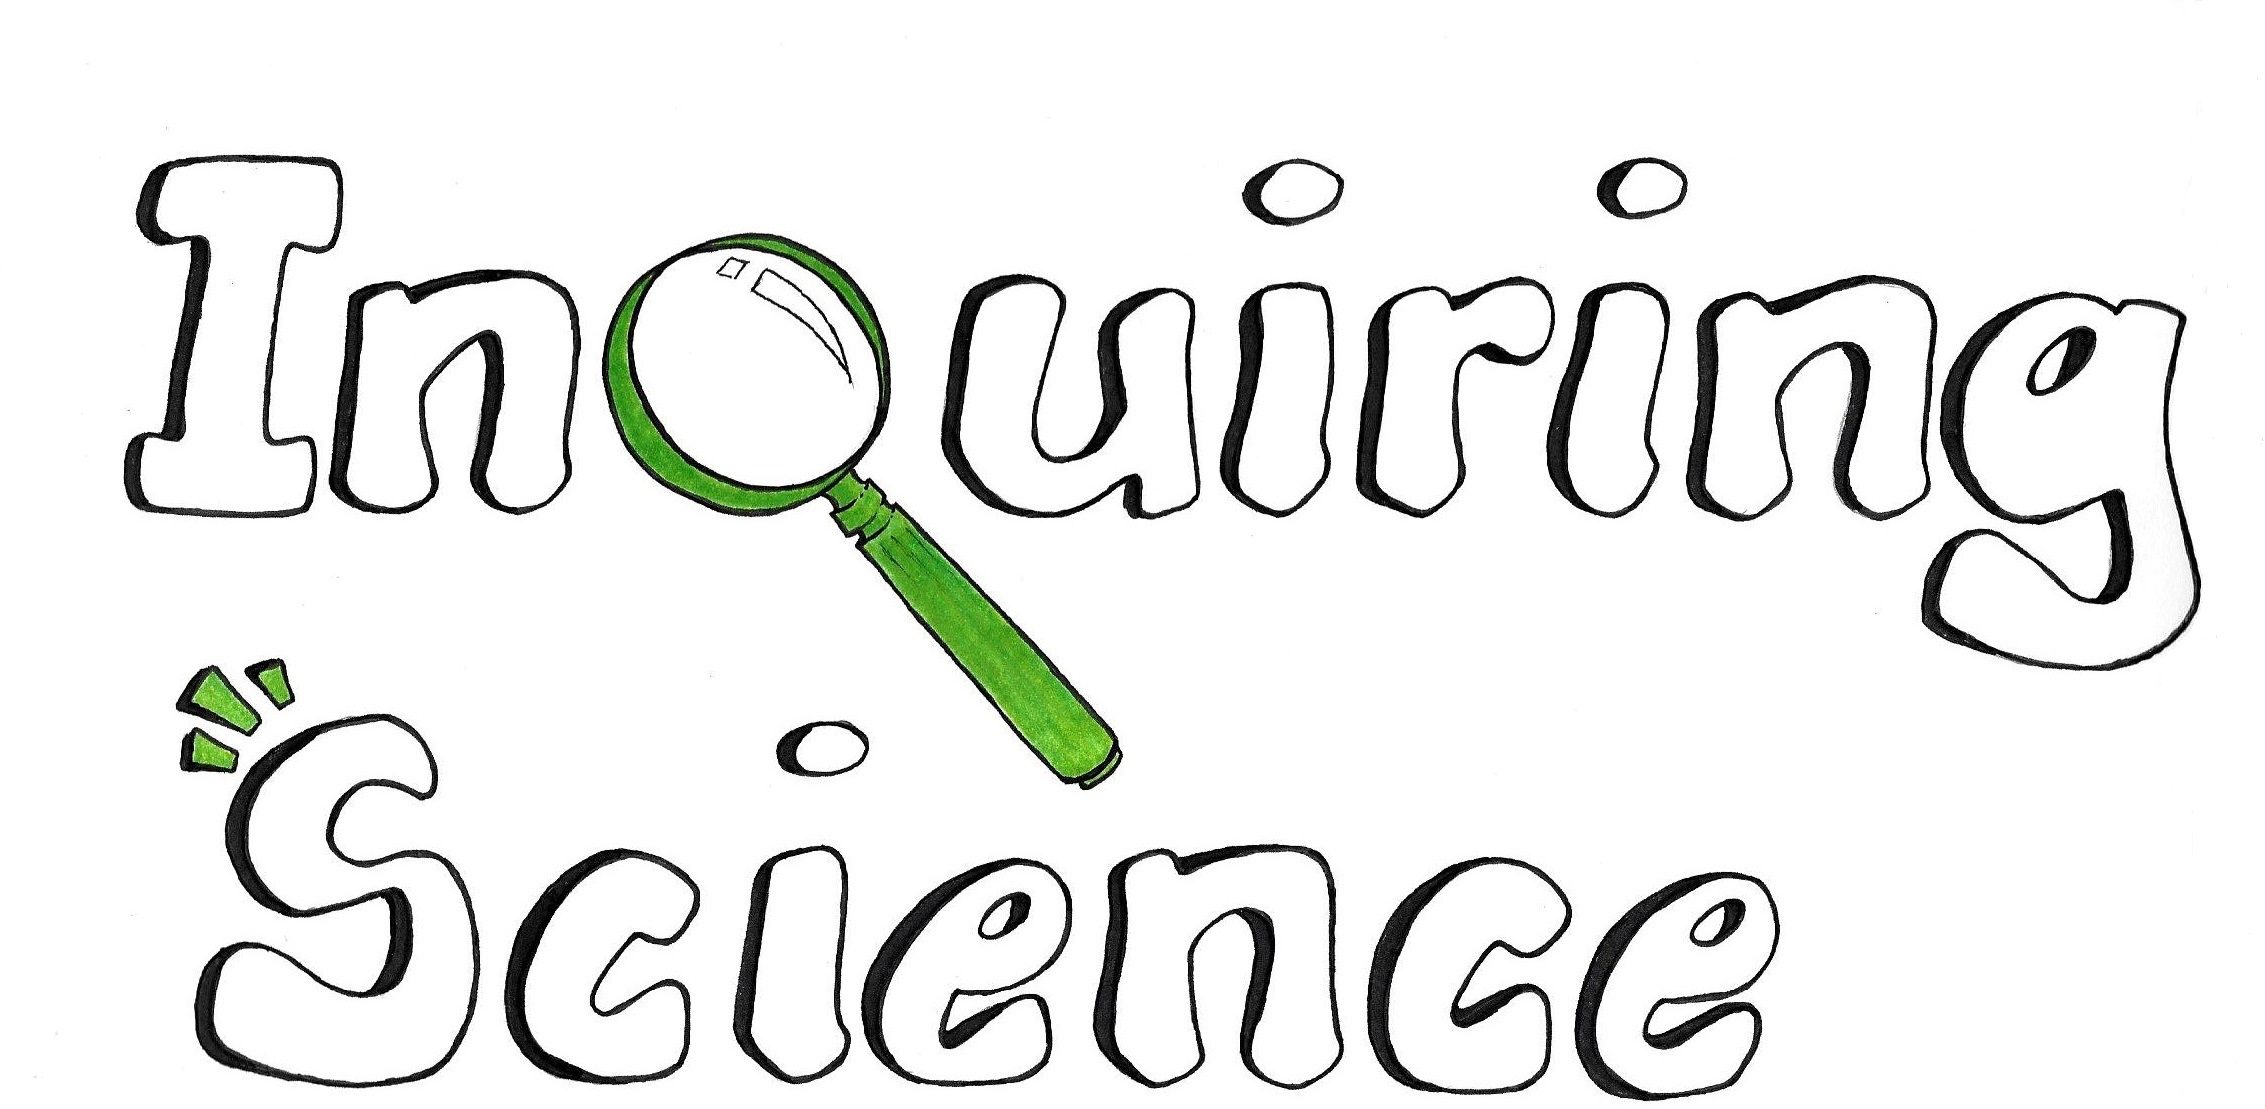 Inquiring Science logo